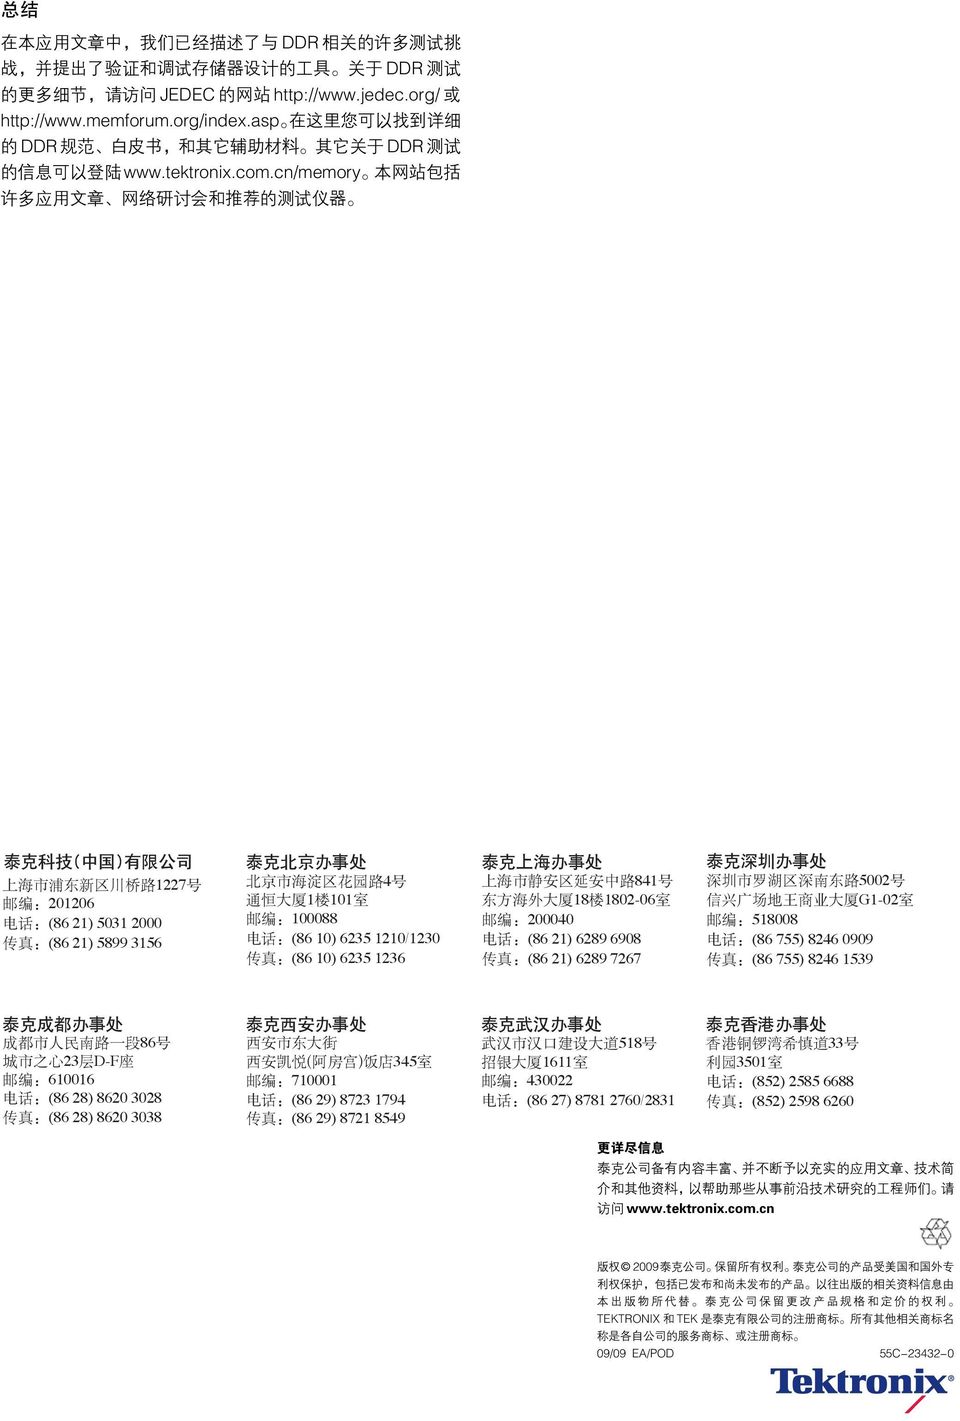 cn/memory 本 网 站 包 括 许 多 应 用 文 章 网 络 研 讨 会 和 推 荐 的 测 试 仪 器 泰 克 科 技 ( 中 国 ) 有 限 公 司 上 海 市 浦 东 新 区 川 桥 路 1227 号 邮 编 :201206 电 话 :(86 21) 5031 2000 传 真 :(86 21) 5899 3156 泰 克 北 京 办 事 处 北 京 市 海 淀 区 花 园 路